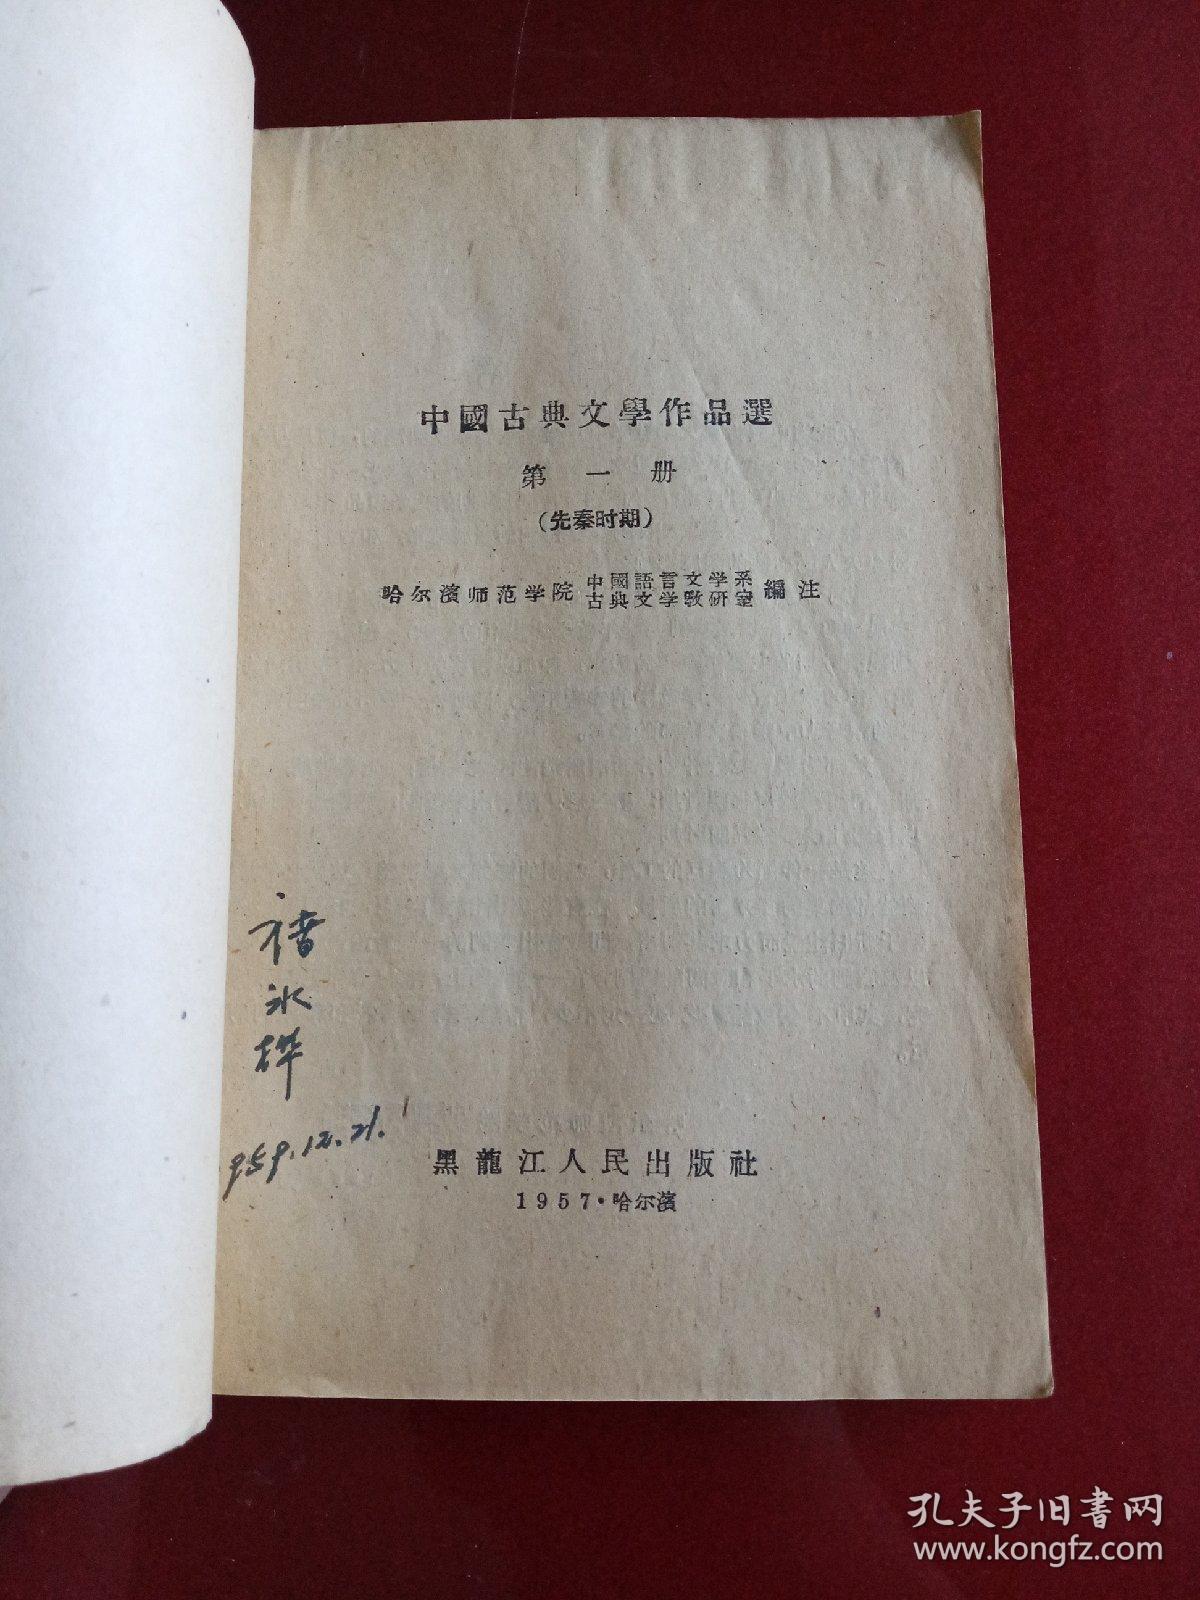 中国古典文学作品选(第一册)